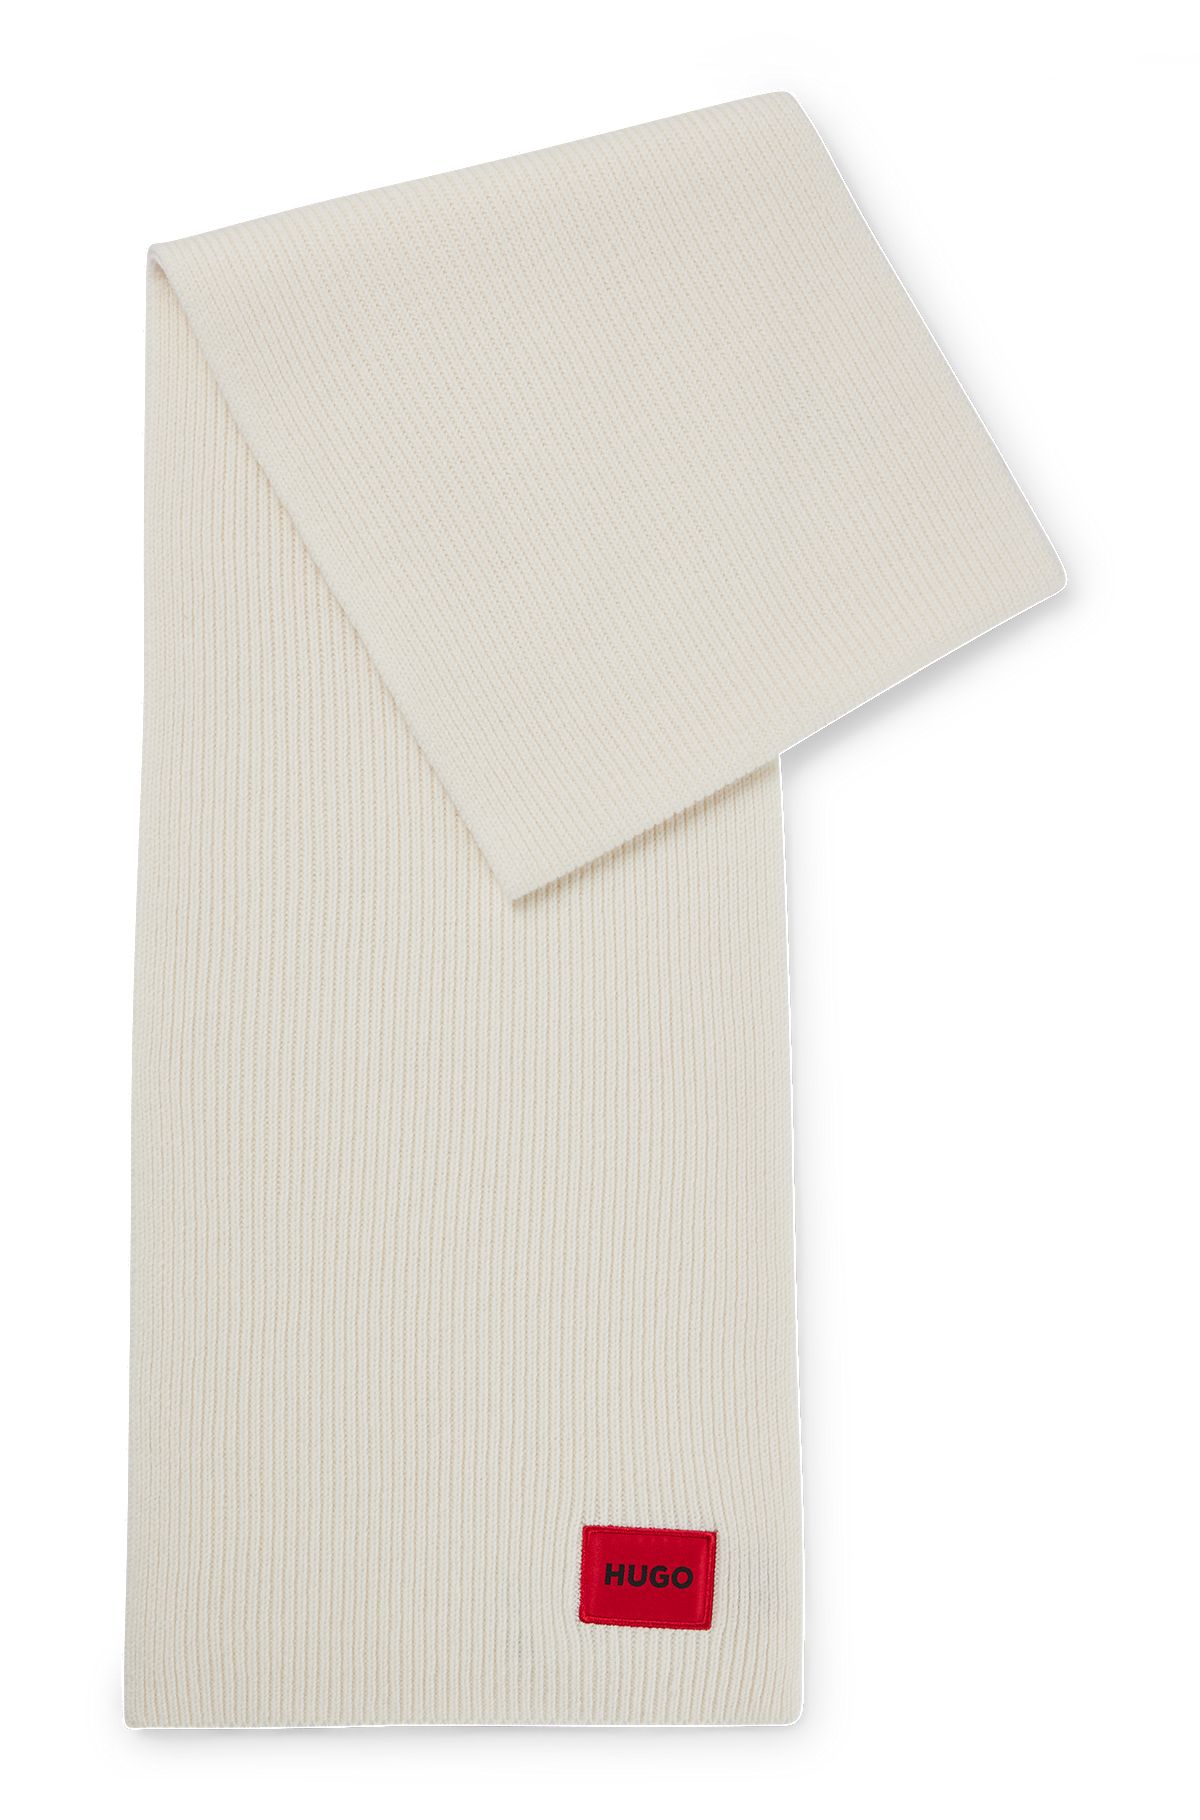 Uldblandet halstørklæde med rødt logomærkat, Lys beige